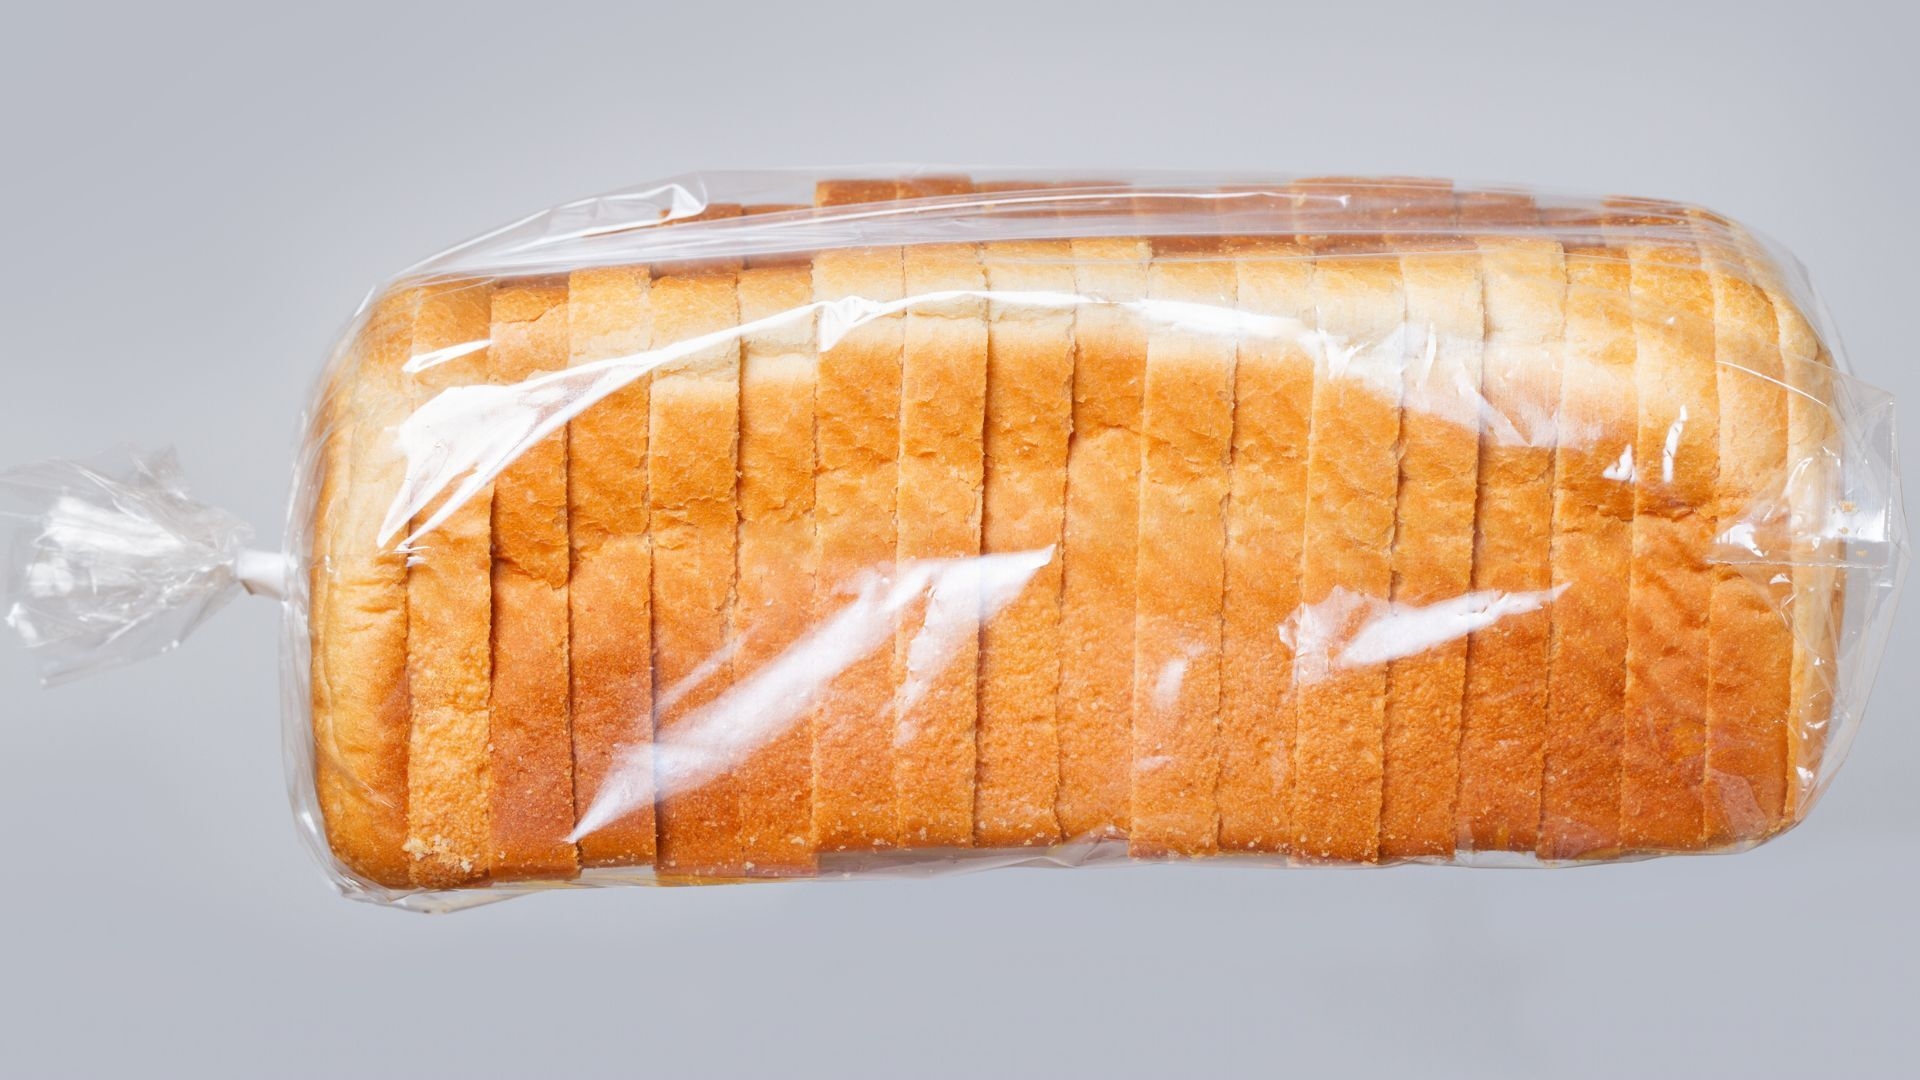 Упаковка провоцирует микробную порчу хлеба